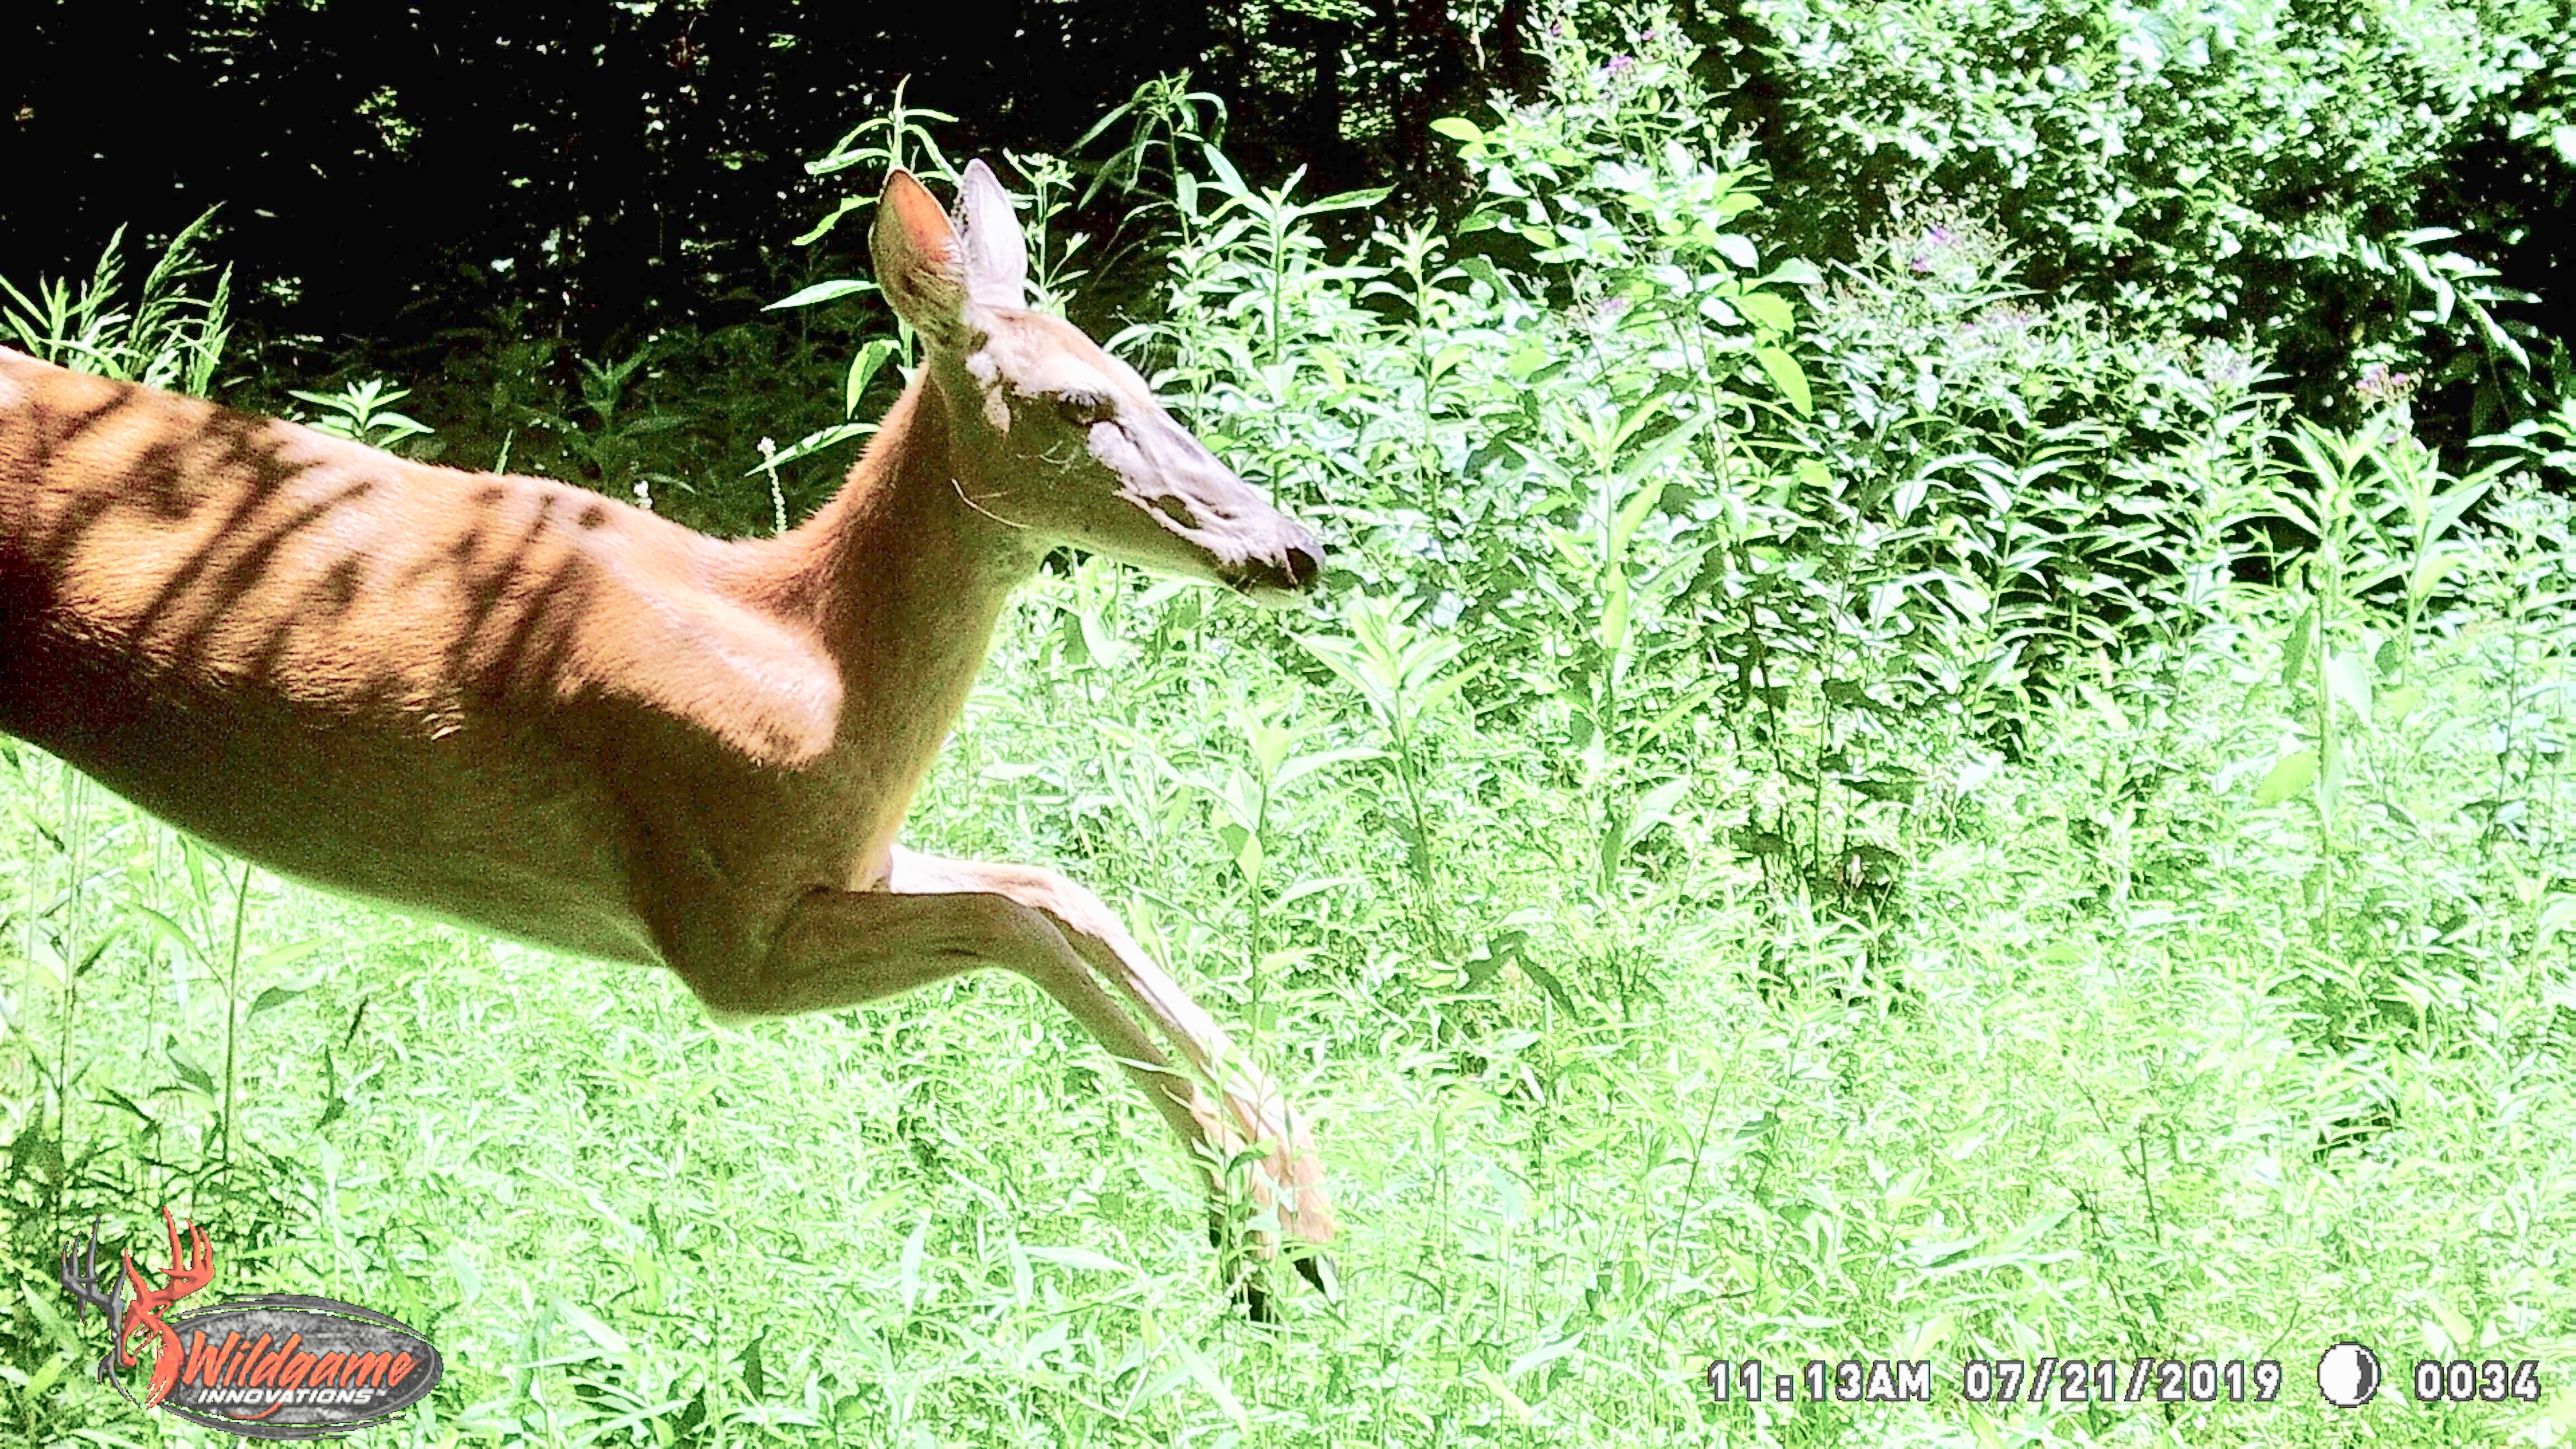 Whitetail deer running past game camera